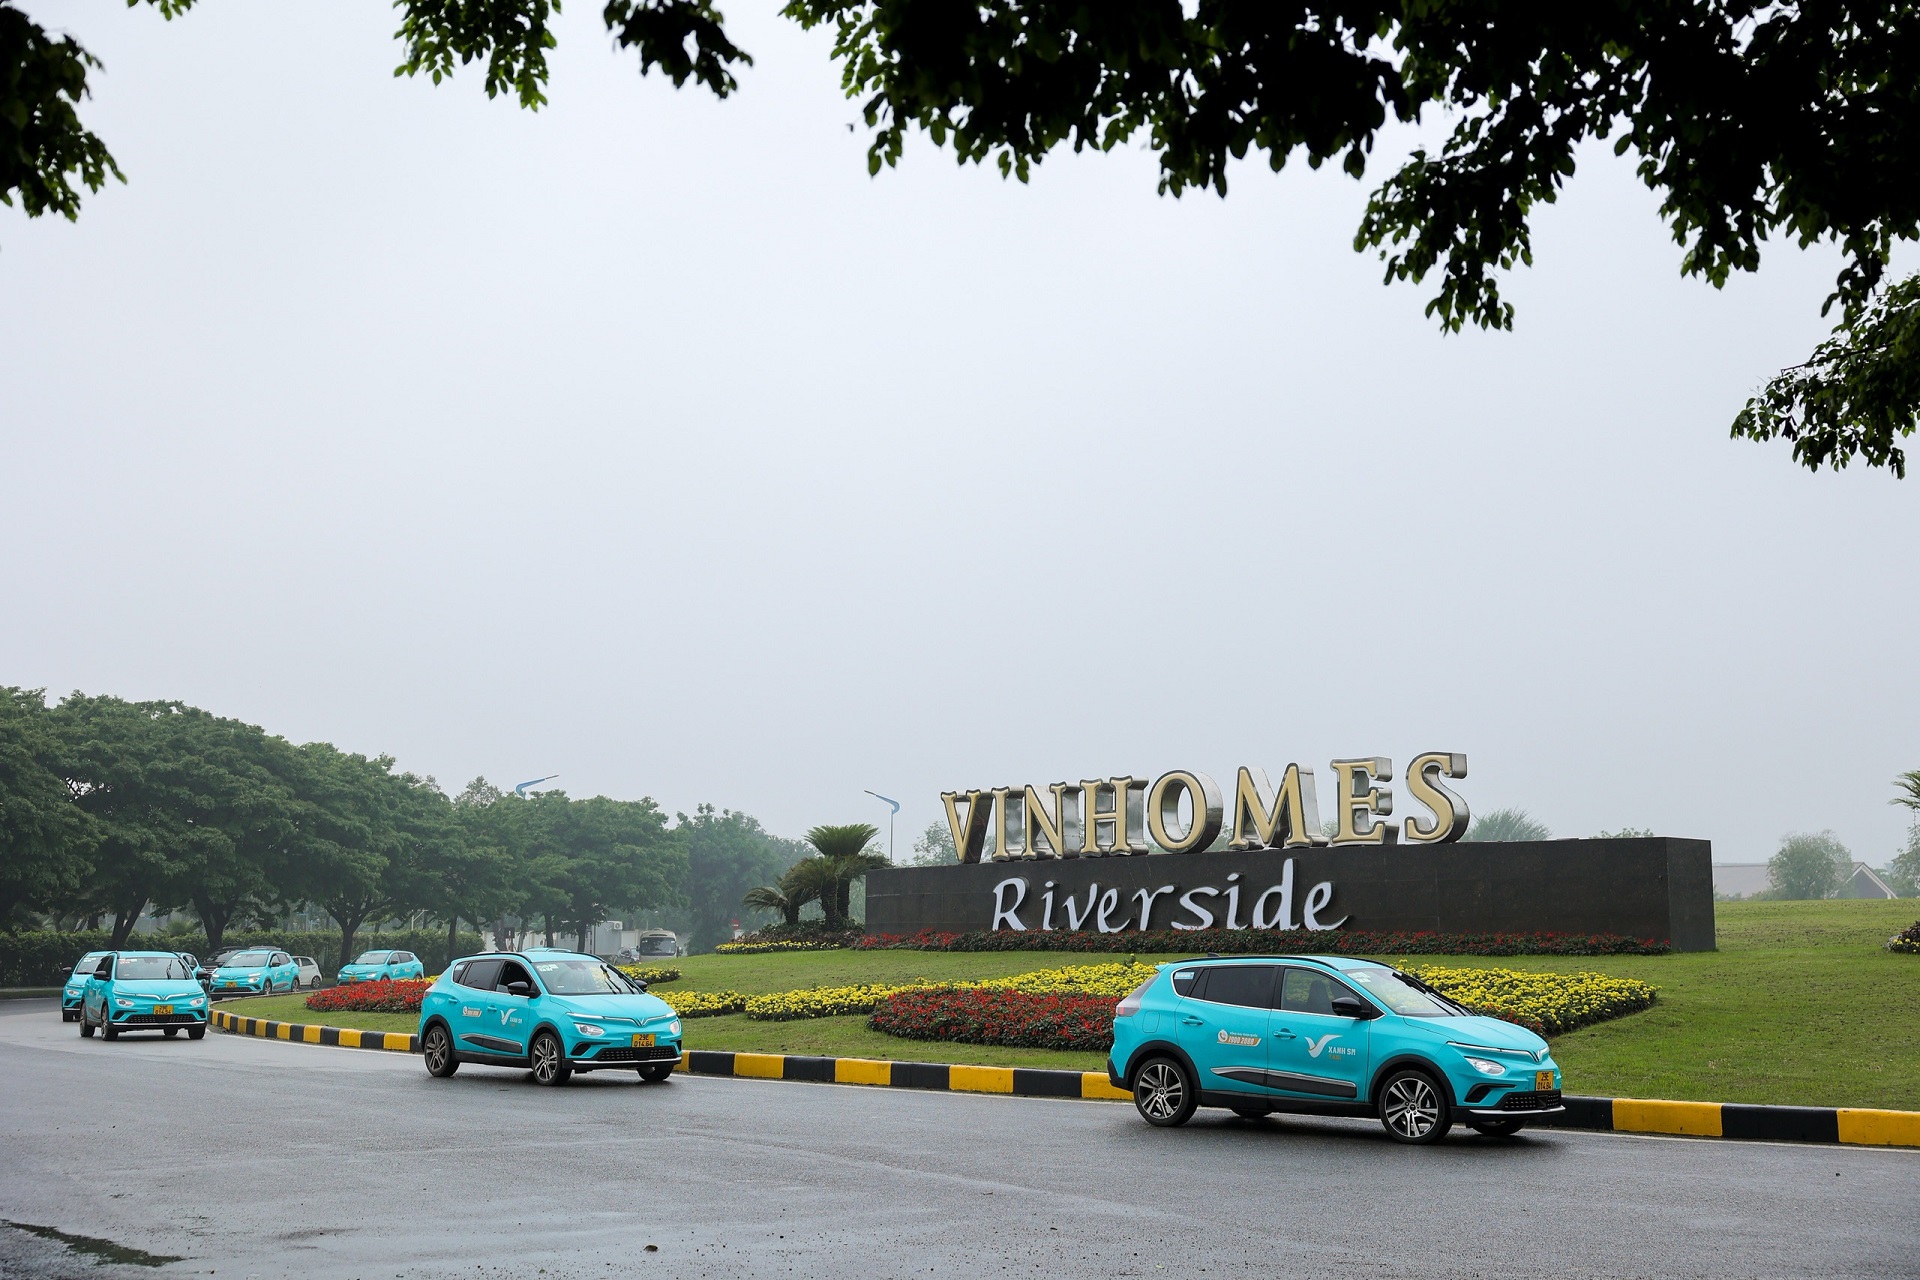 Kinh tế - Khai trương hãng taxi thuần điện đầu tiên tại Việt Nam (Hình 4).